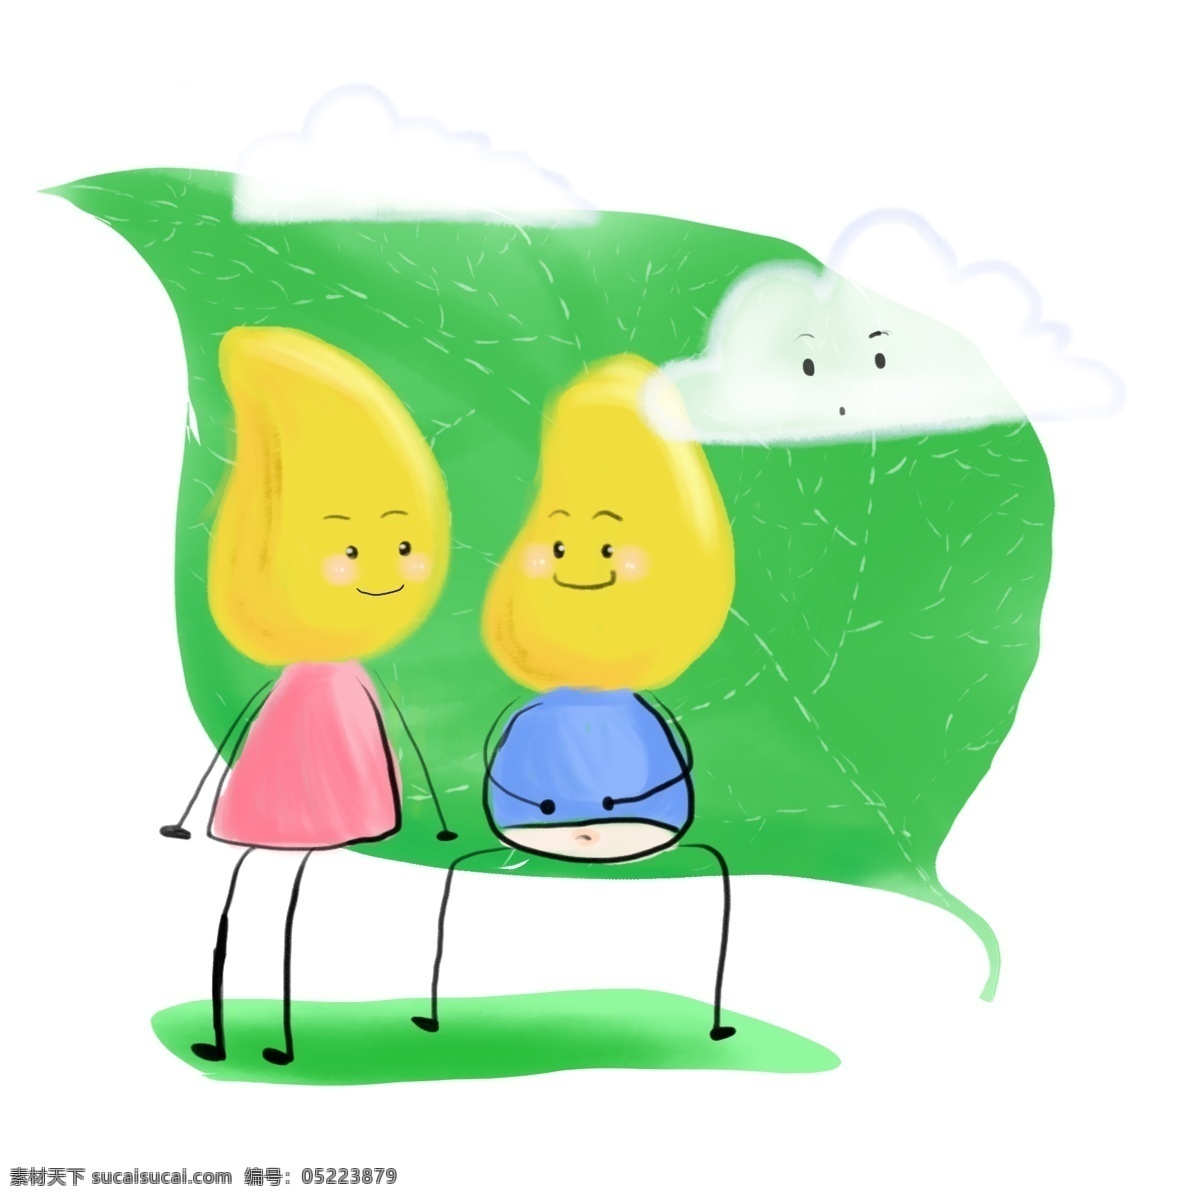 芒果 水果 笑脸 多云 绿叶 春天 卡通 可爱 黄色 图案 水果笑脸 多云天气 绿色 卡通可爱 图案元素